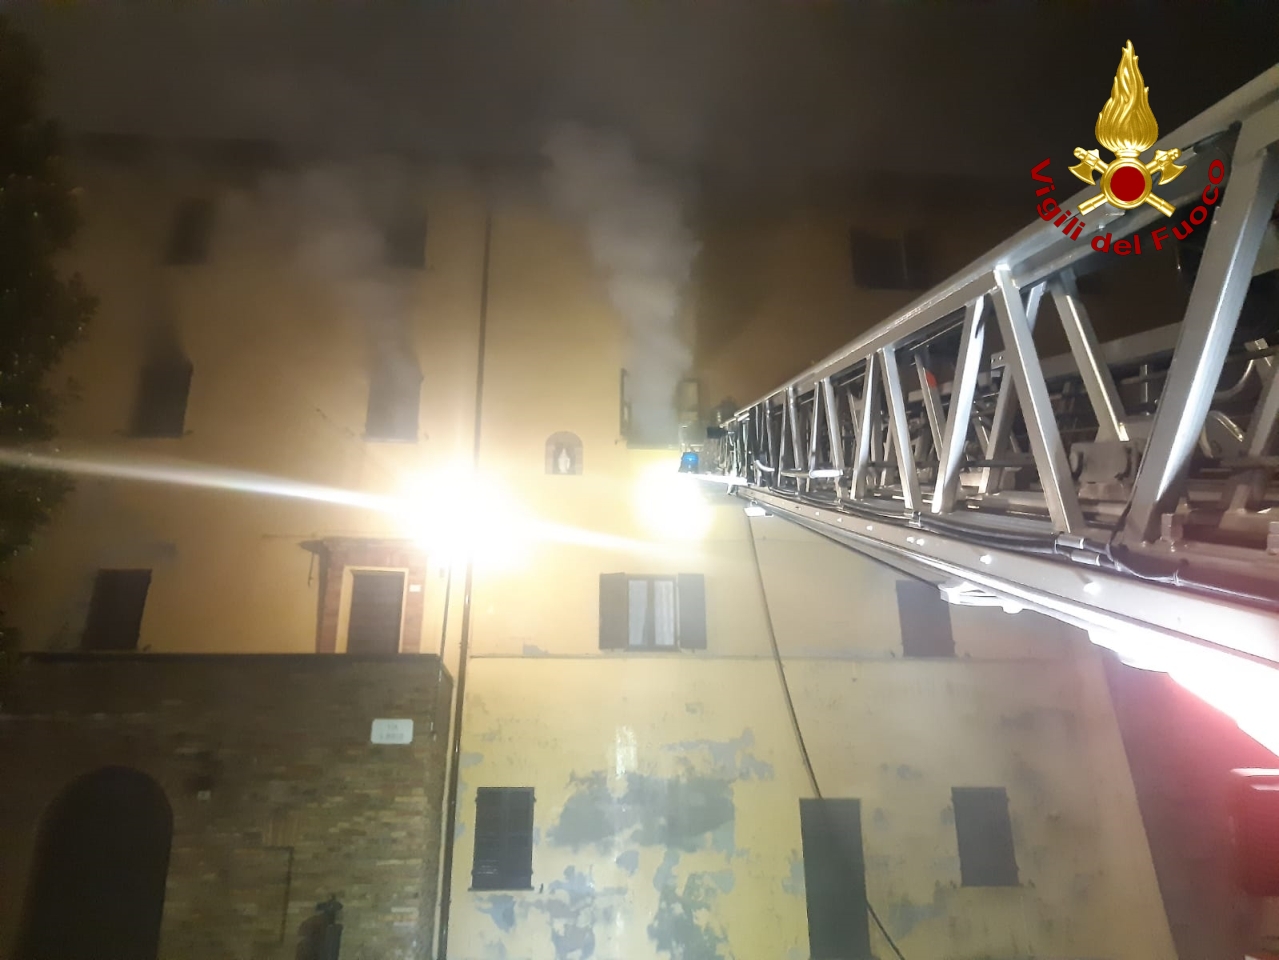 Incendio in una palazzina: 12 persone evacuate e 4 abitazioni inagibili